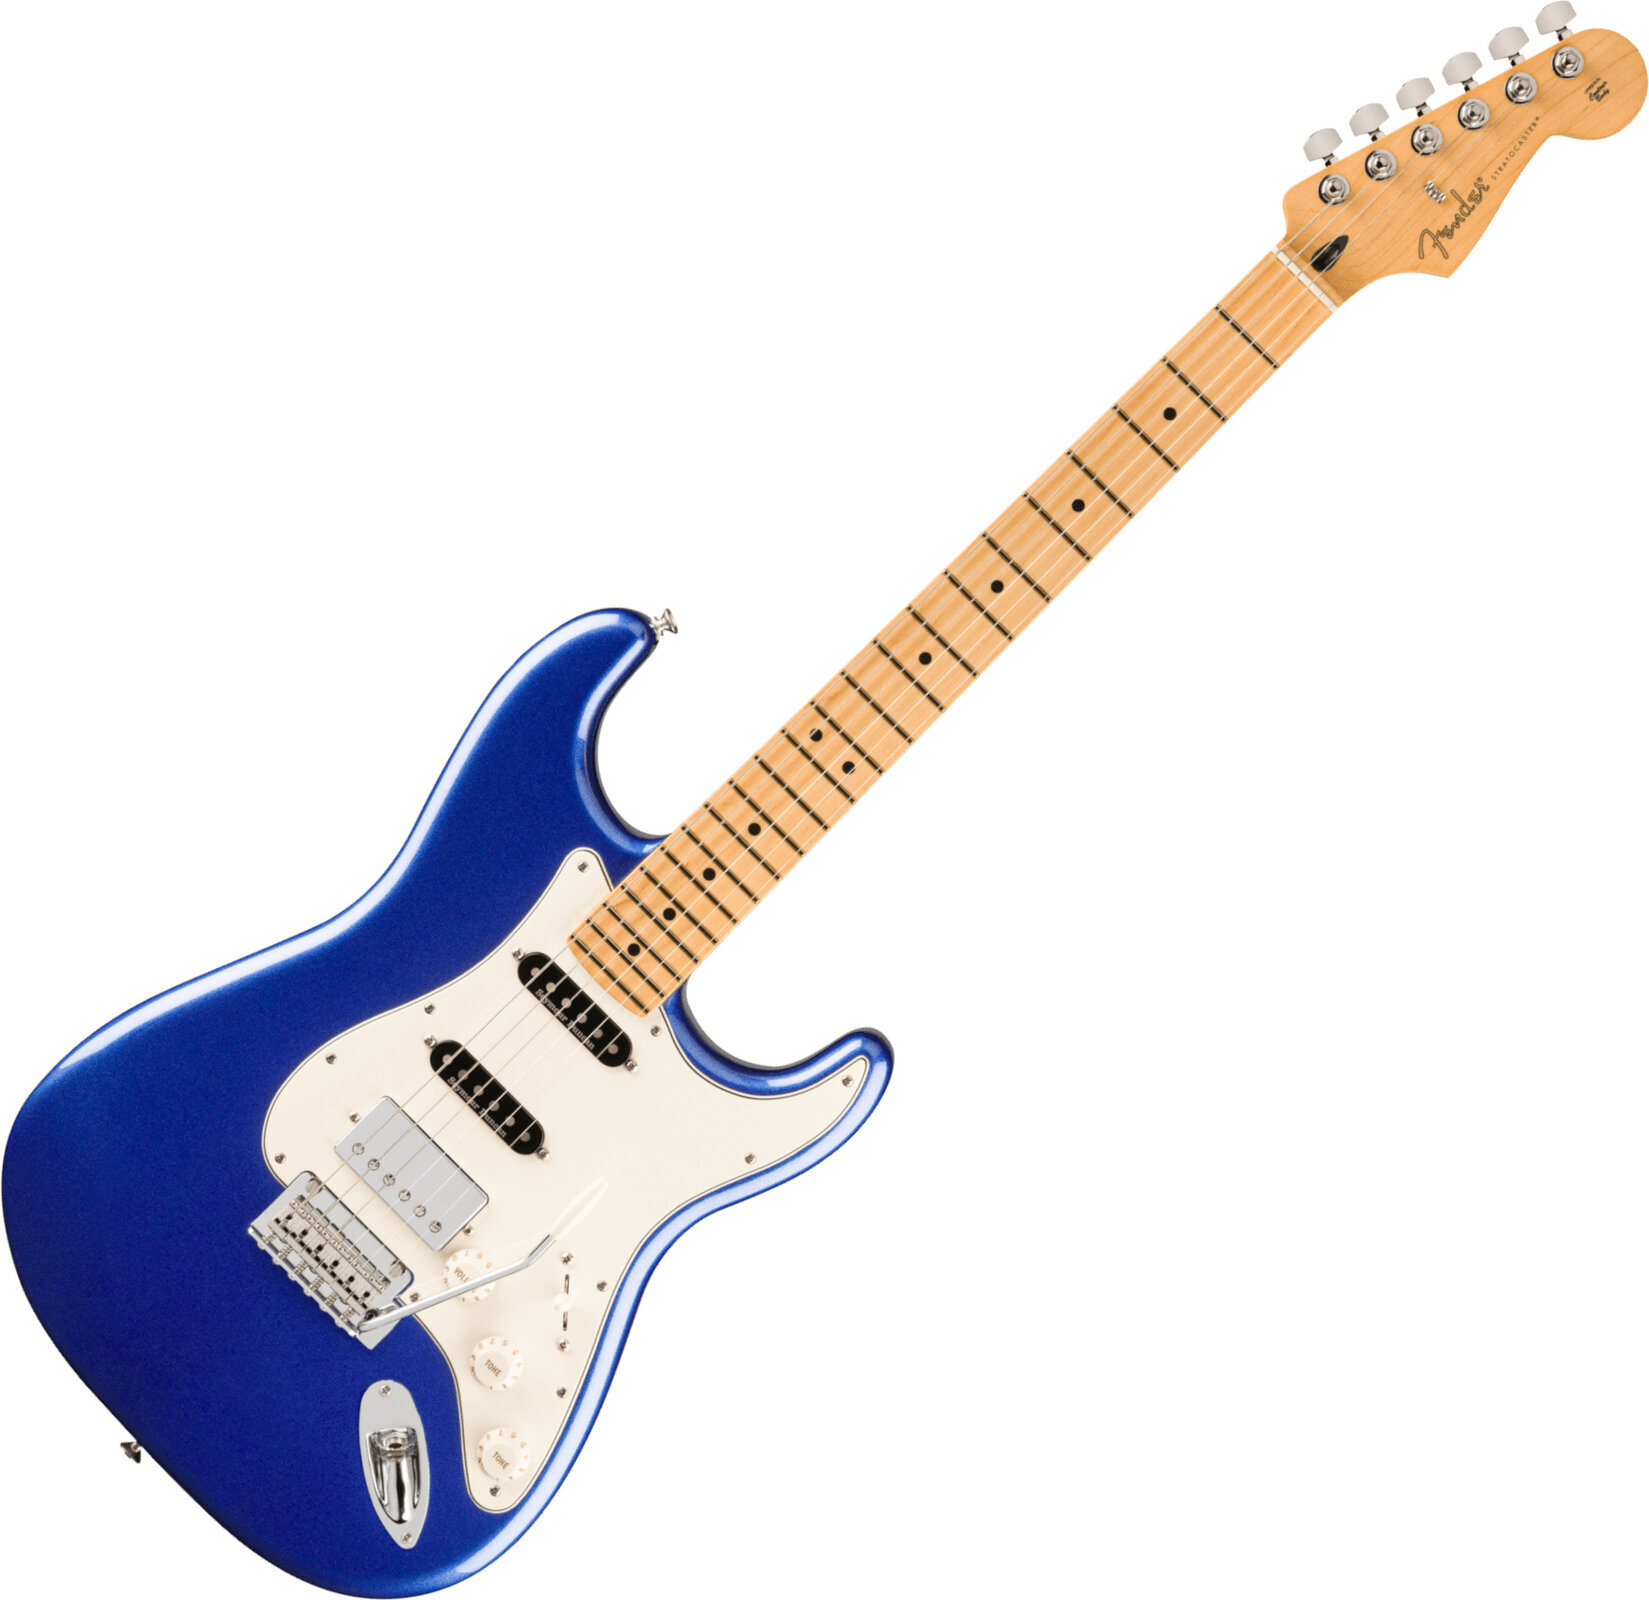 Fender Player Series Stratocaster HSS MN Daytona Blue